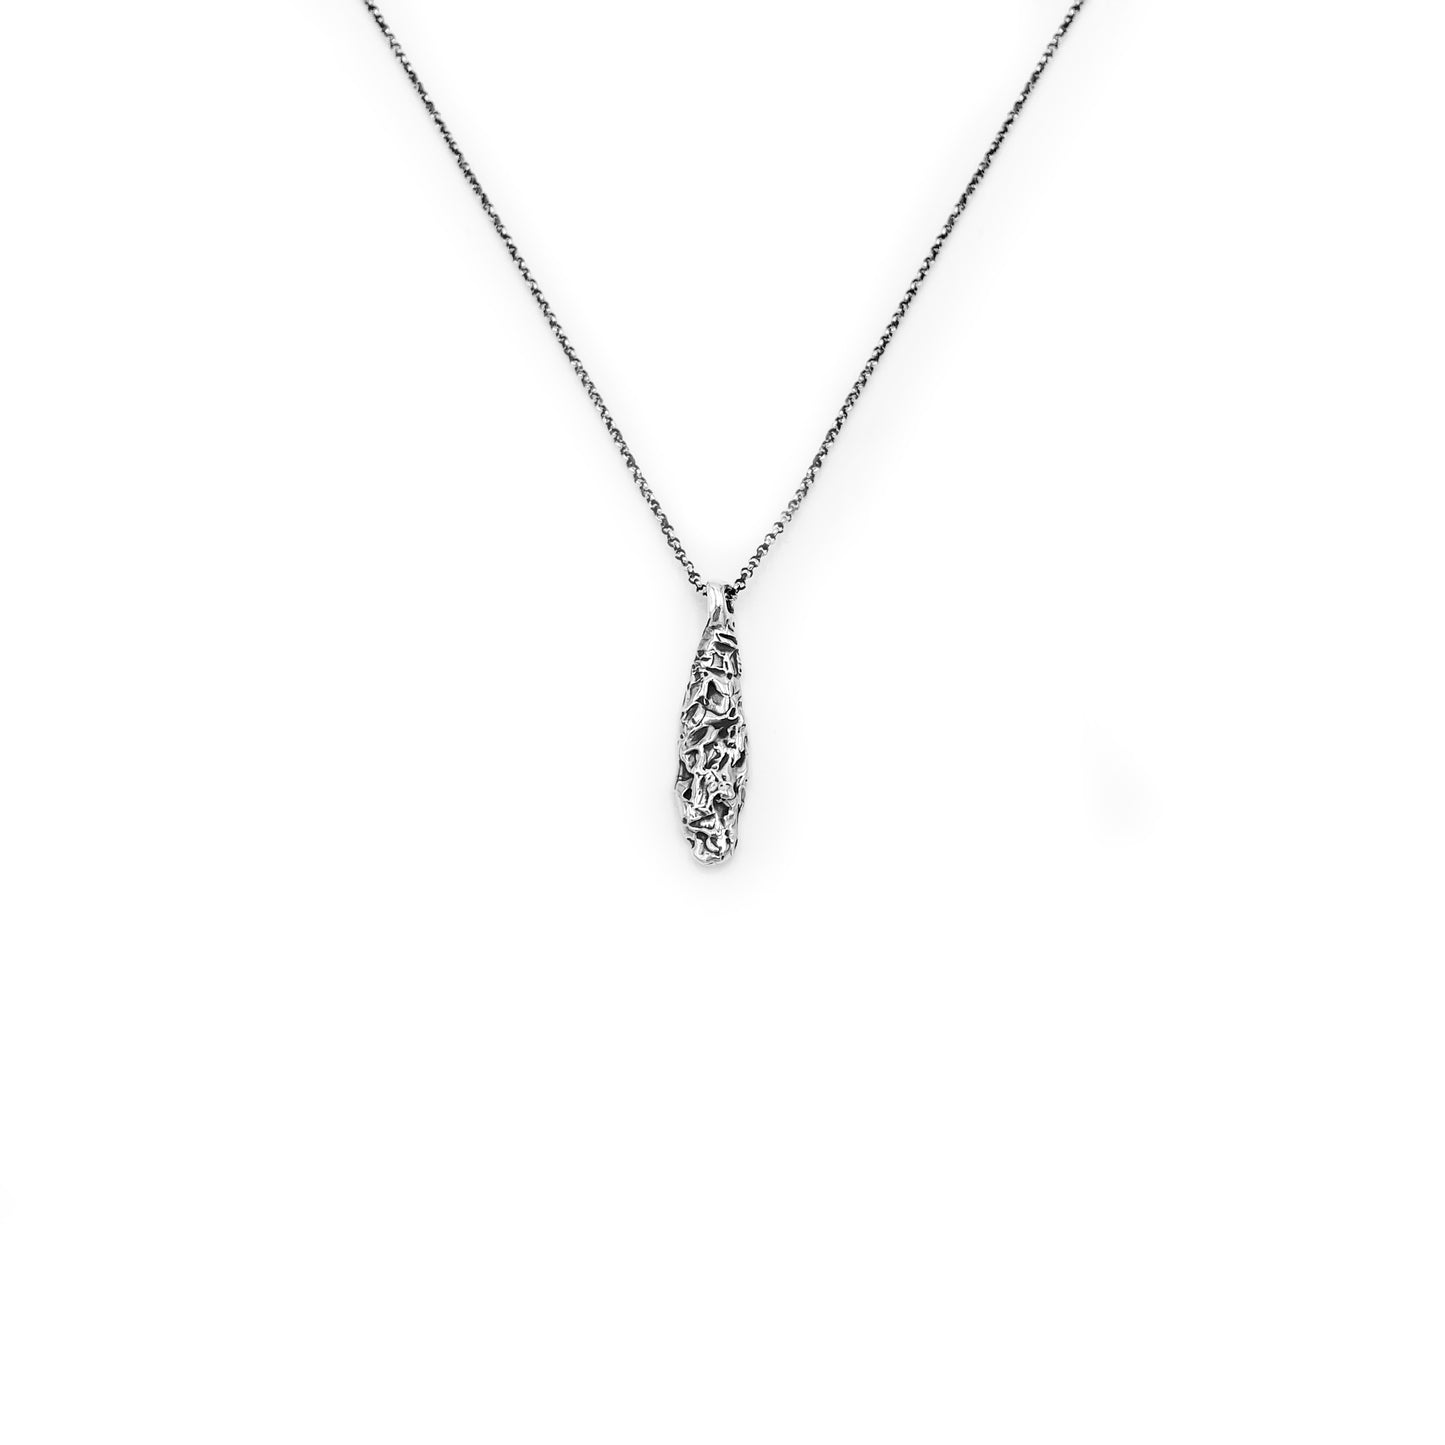 Al Risha Necklace | Elegant Necklace | Casual Necklace | Constellation Necklace | Silver Chain